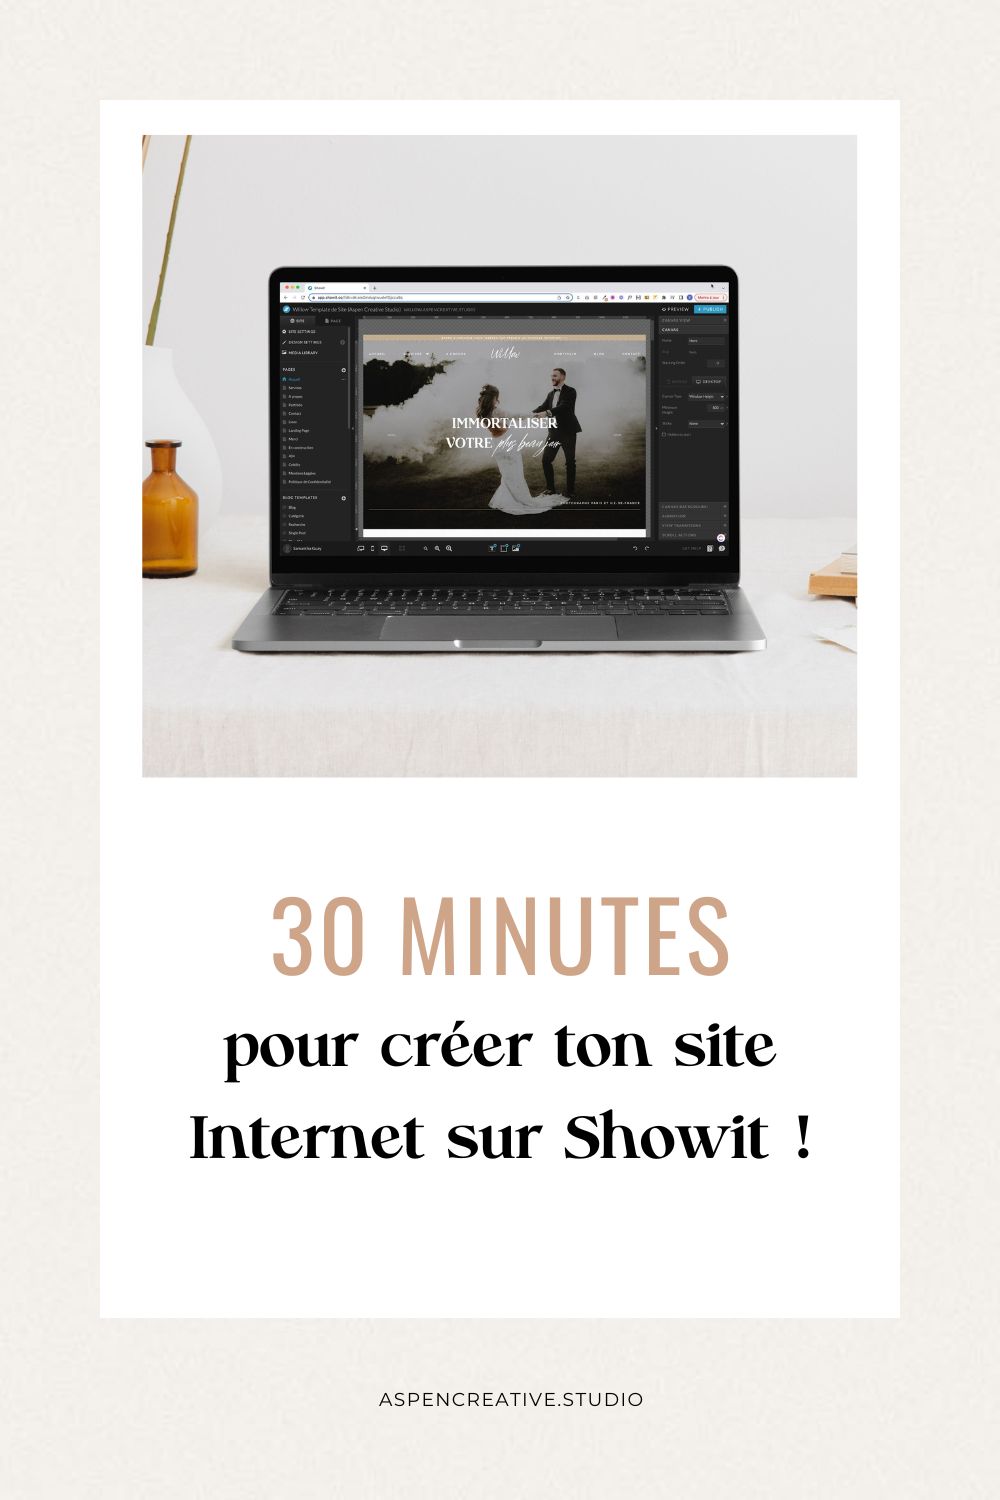 Visuel Pinterest pour l'article "Apprendre Showit en 30 minutes" avec le nom de l'article et une photo d'ordinateur